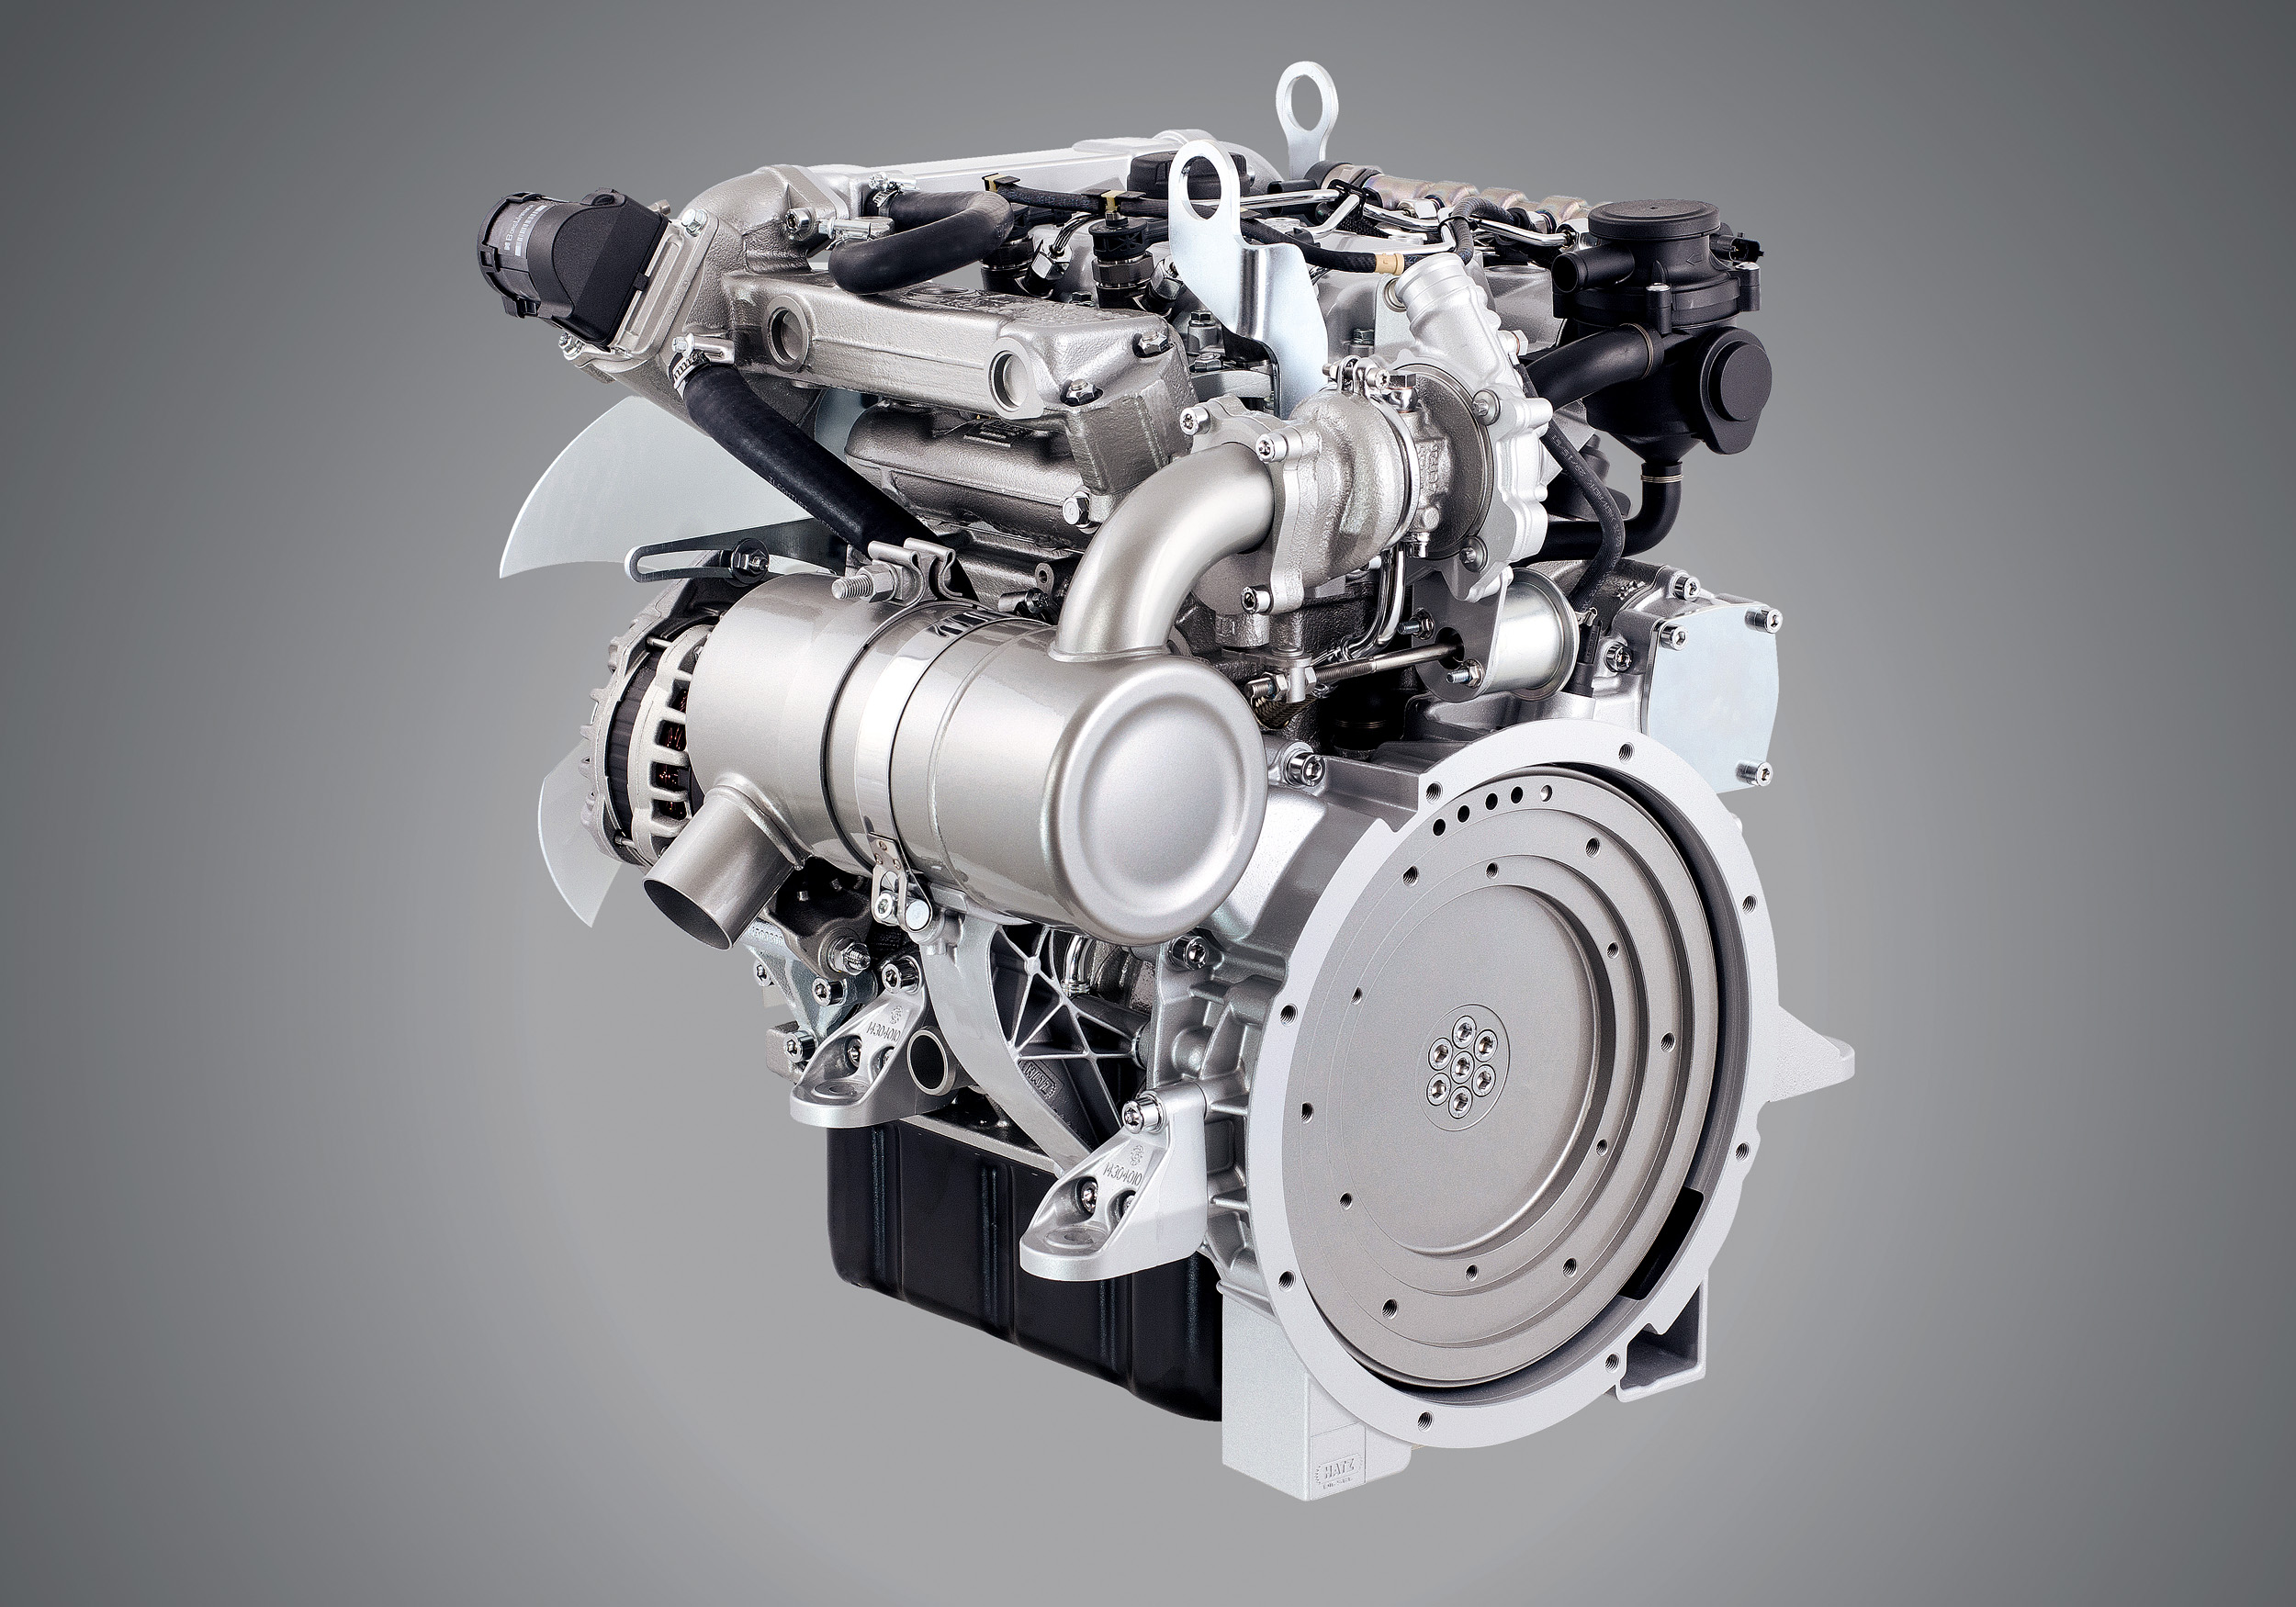 Дизель дизельный. Hatz 3h50ti. Motorenfabrik Hatz GMBH & co. kg. Дизельный двигатель. Дизельный тепловой двигатель.